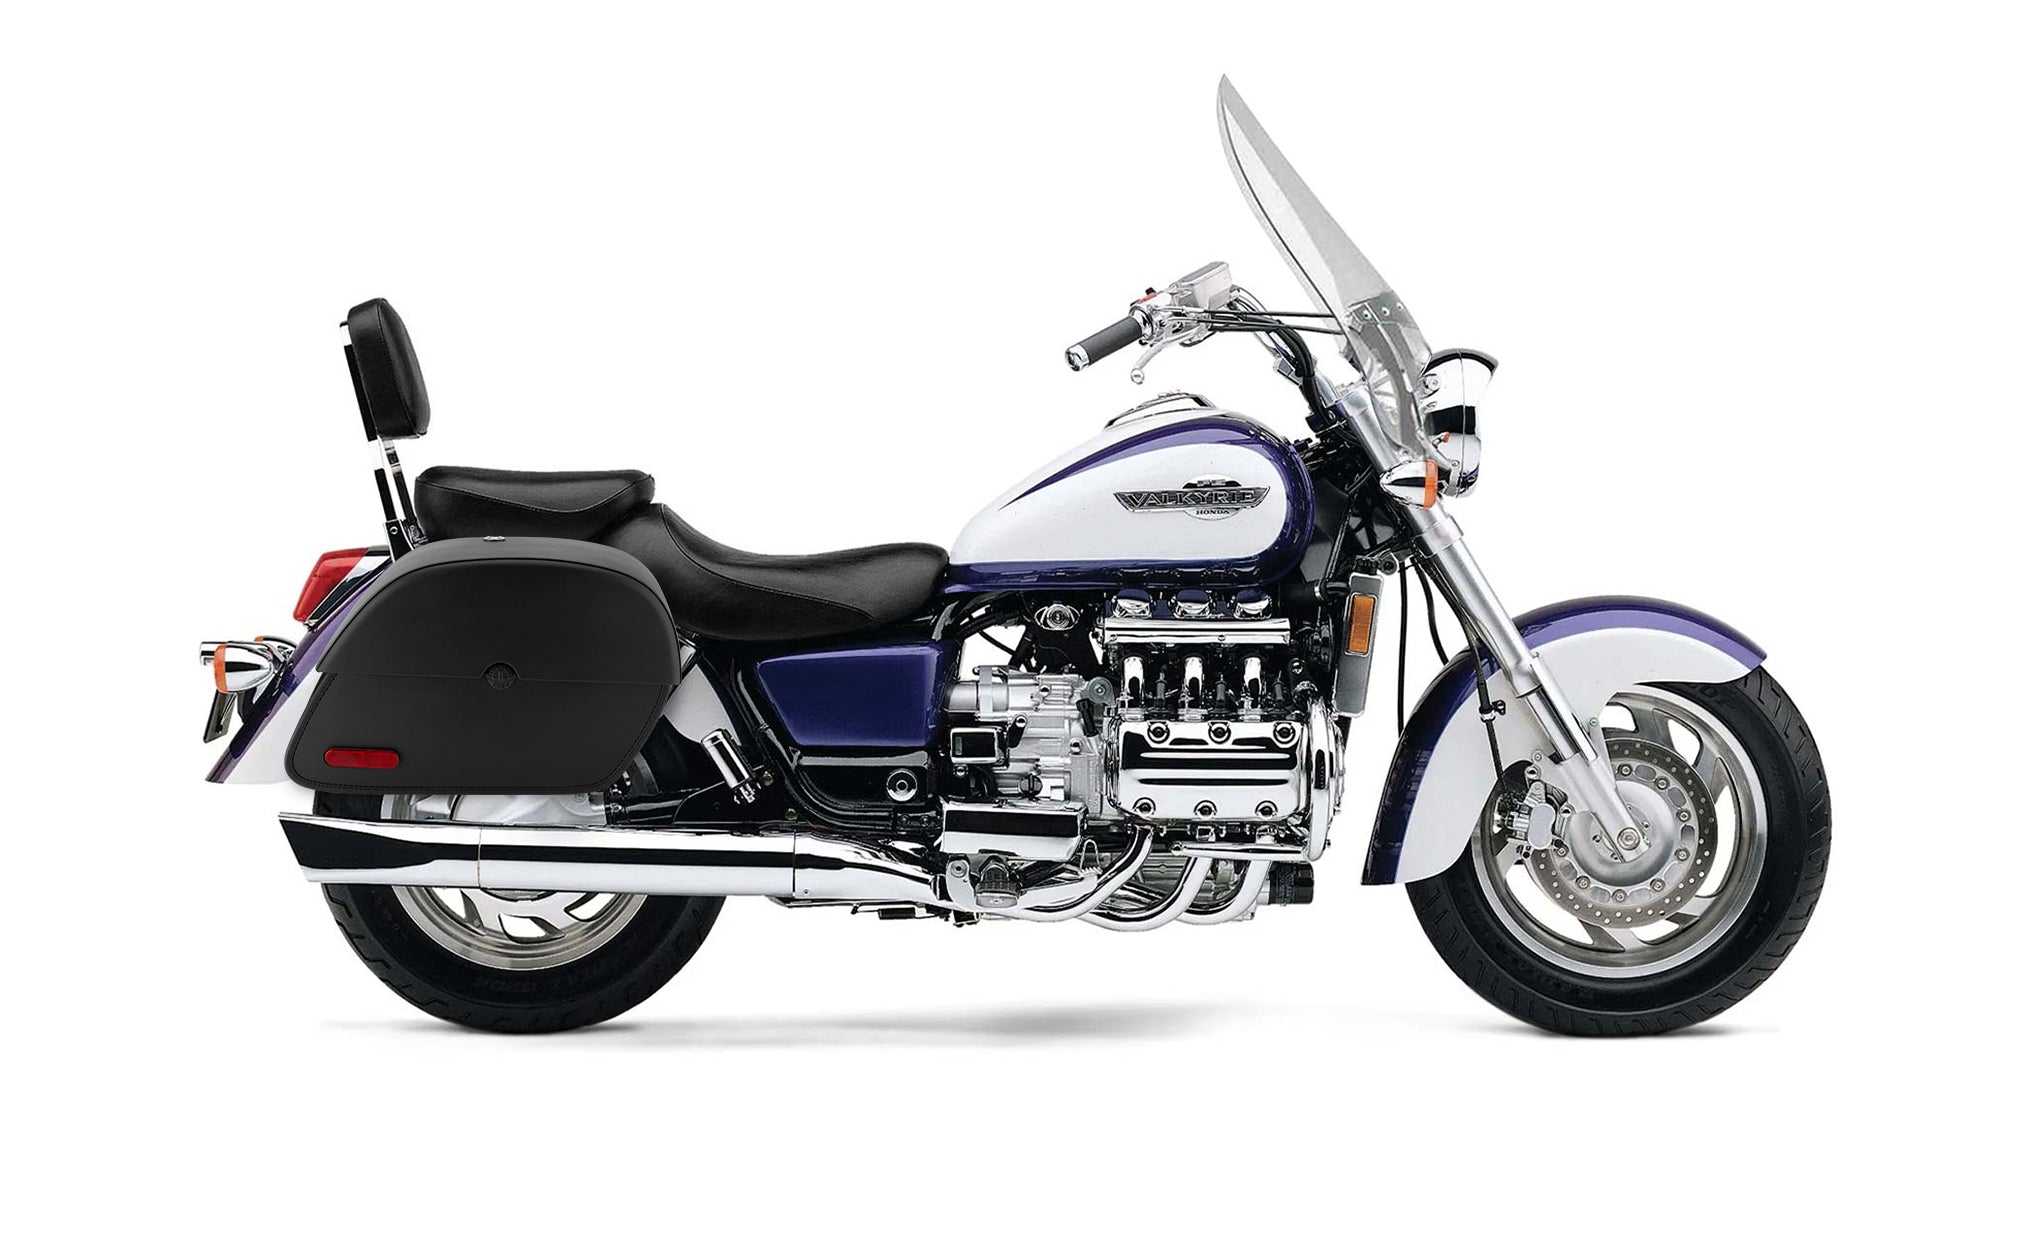 Viking Panzer Large Honda Valkyrie 1500 Tourer Leather Motorcycle Saddlebags on Bike Photo @expand